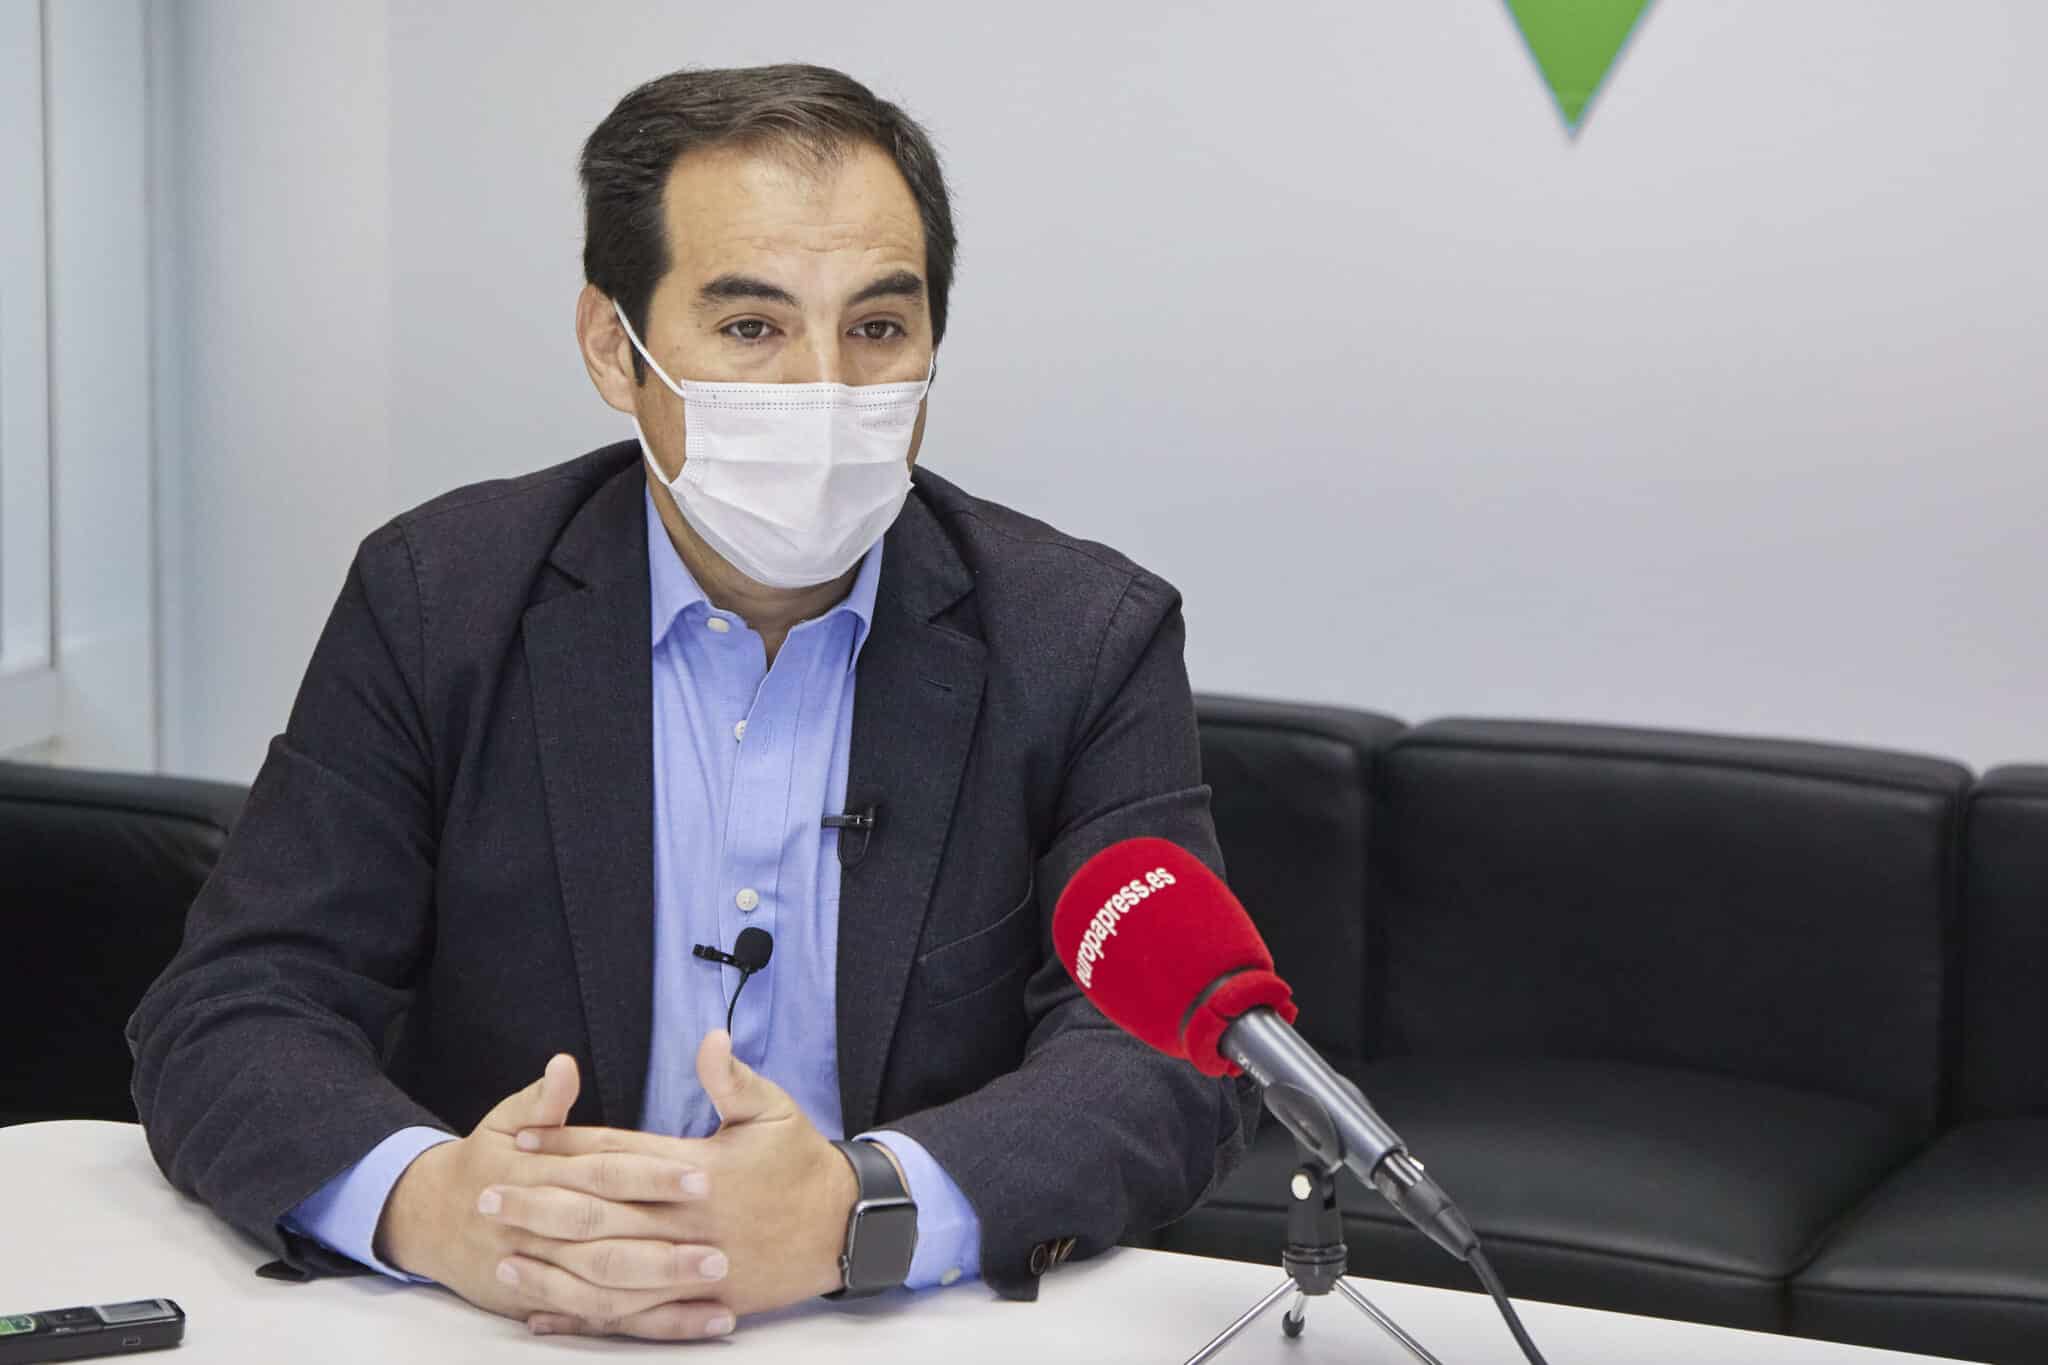 El portavoz del grupo parlamentario Popular, José Antonio Nieto, posa durante la entrevista a EuropaPress